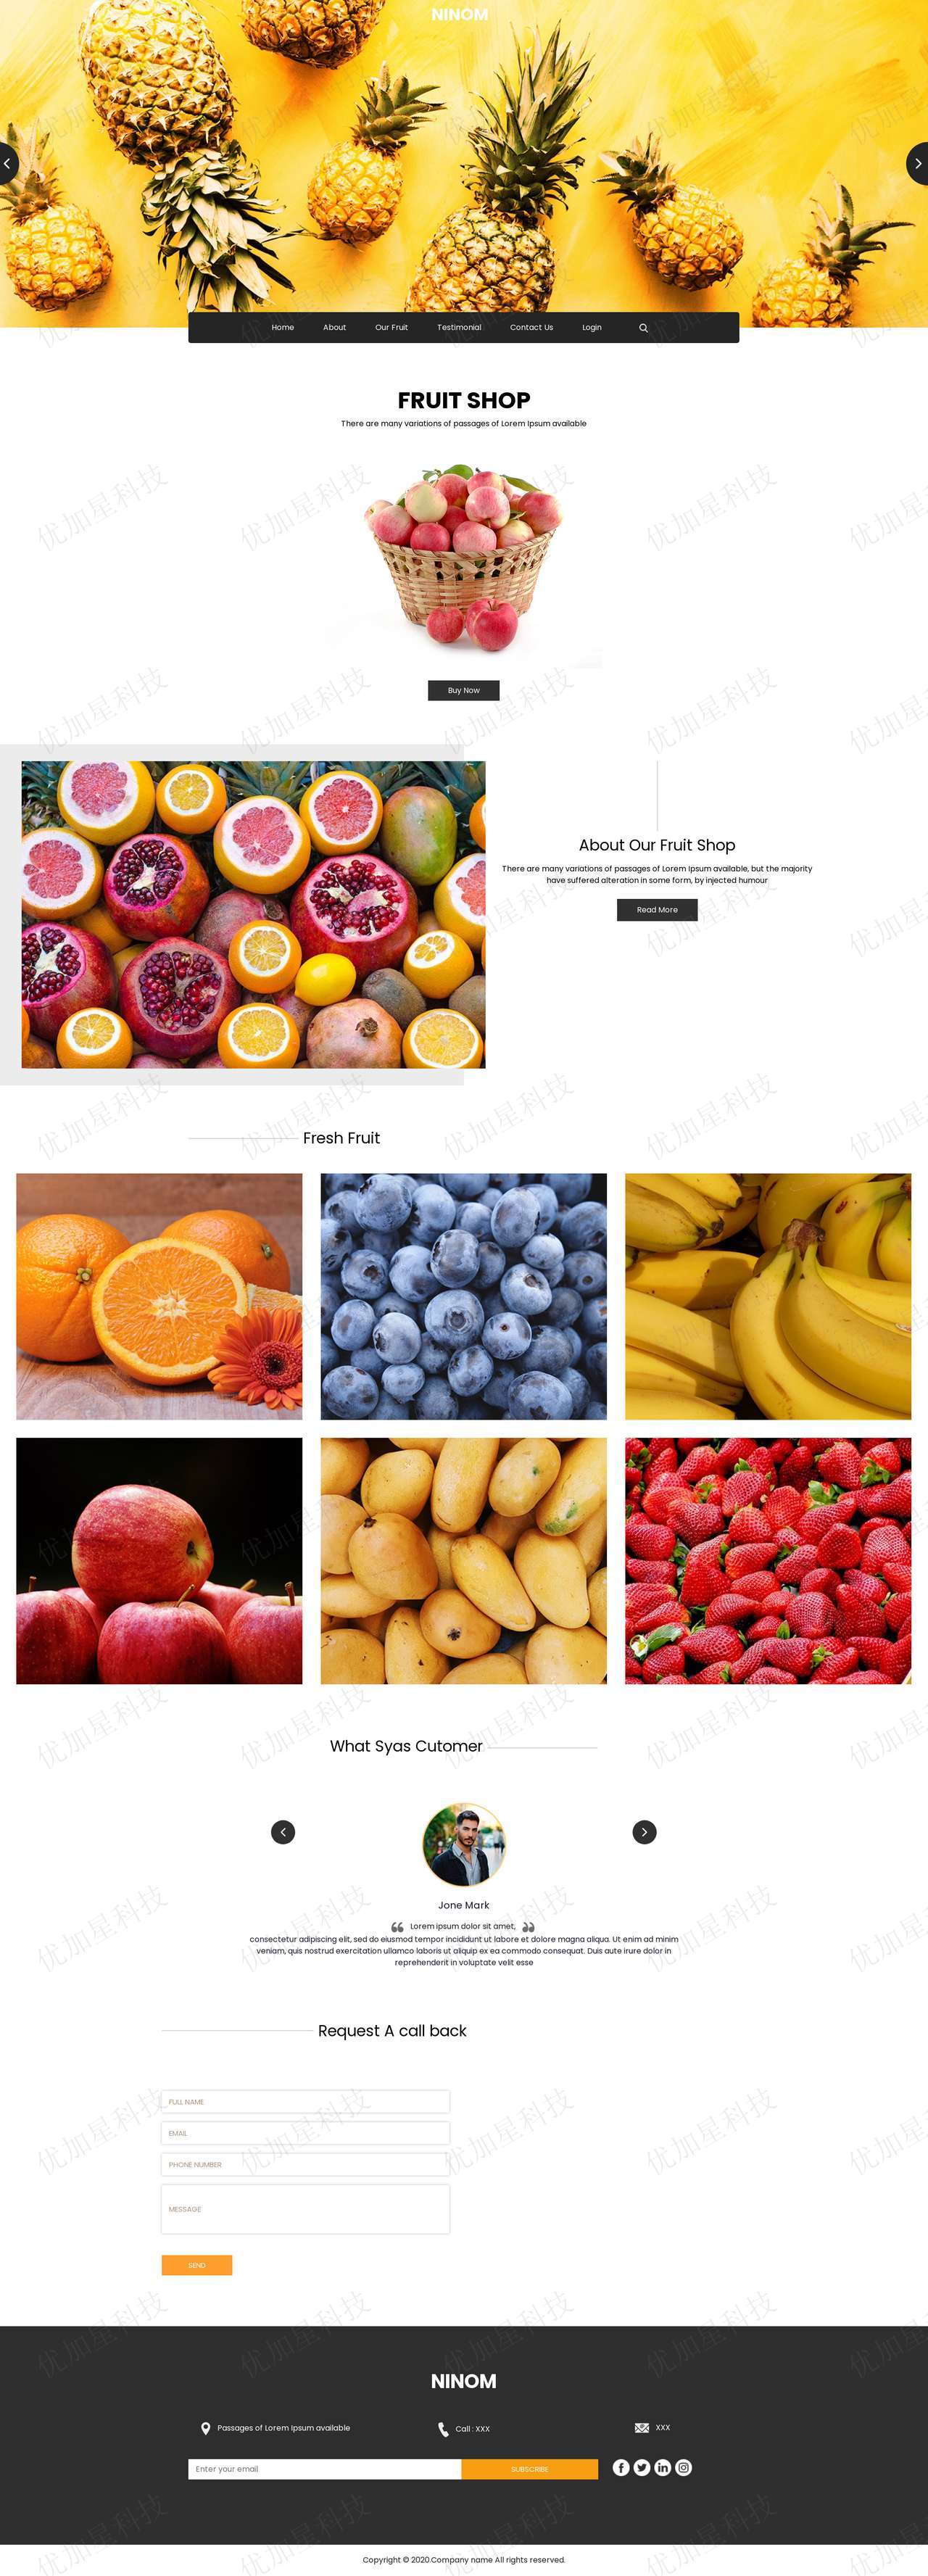 大气简洁响应式水果网上商店网站模板_优加星网络科技